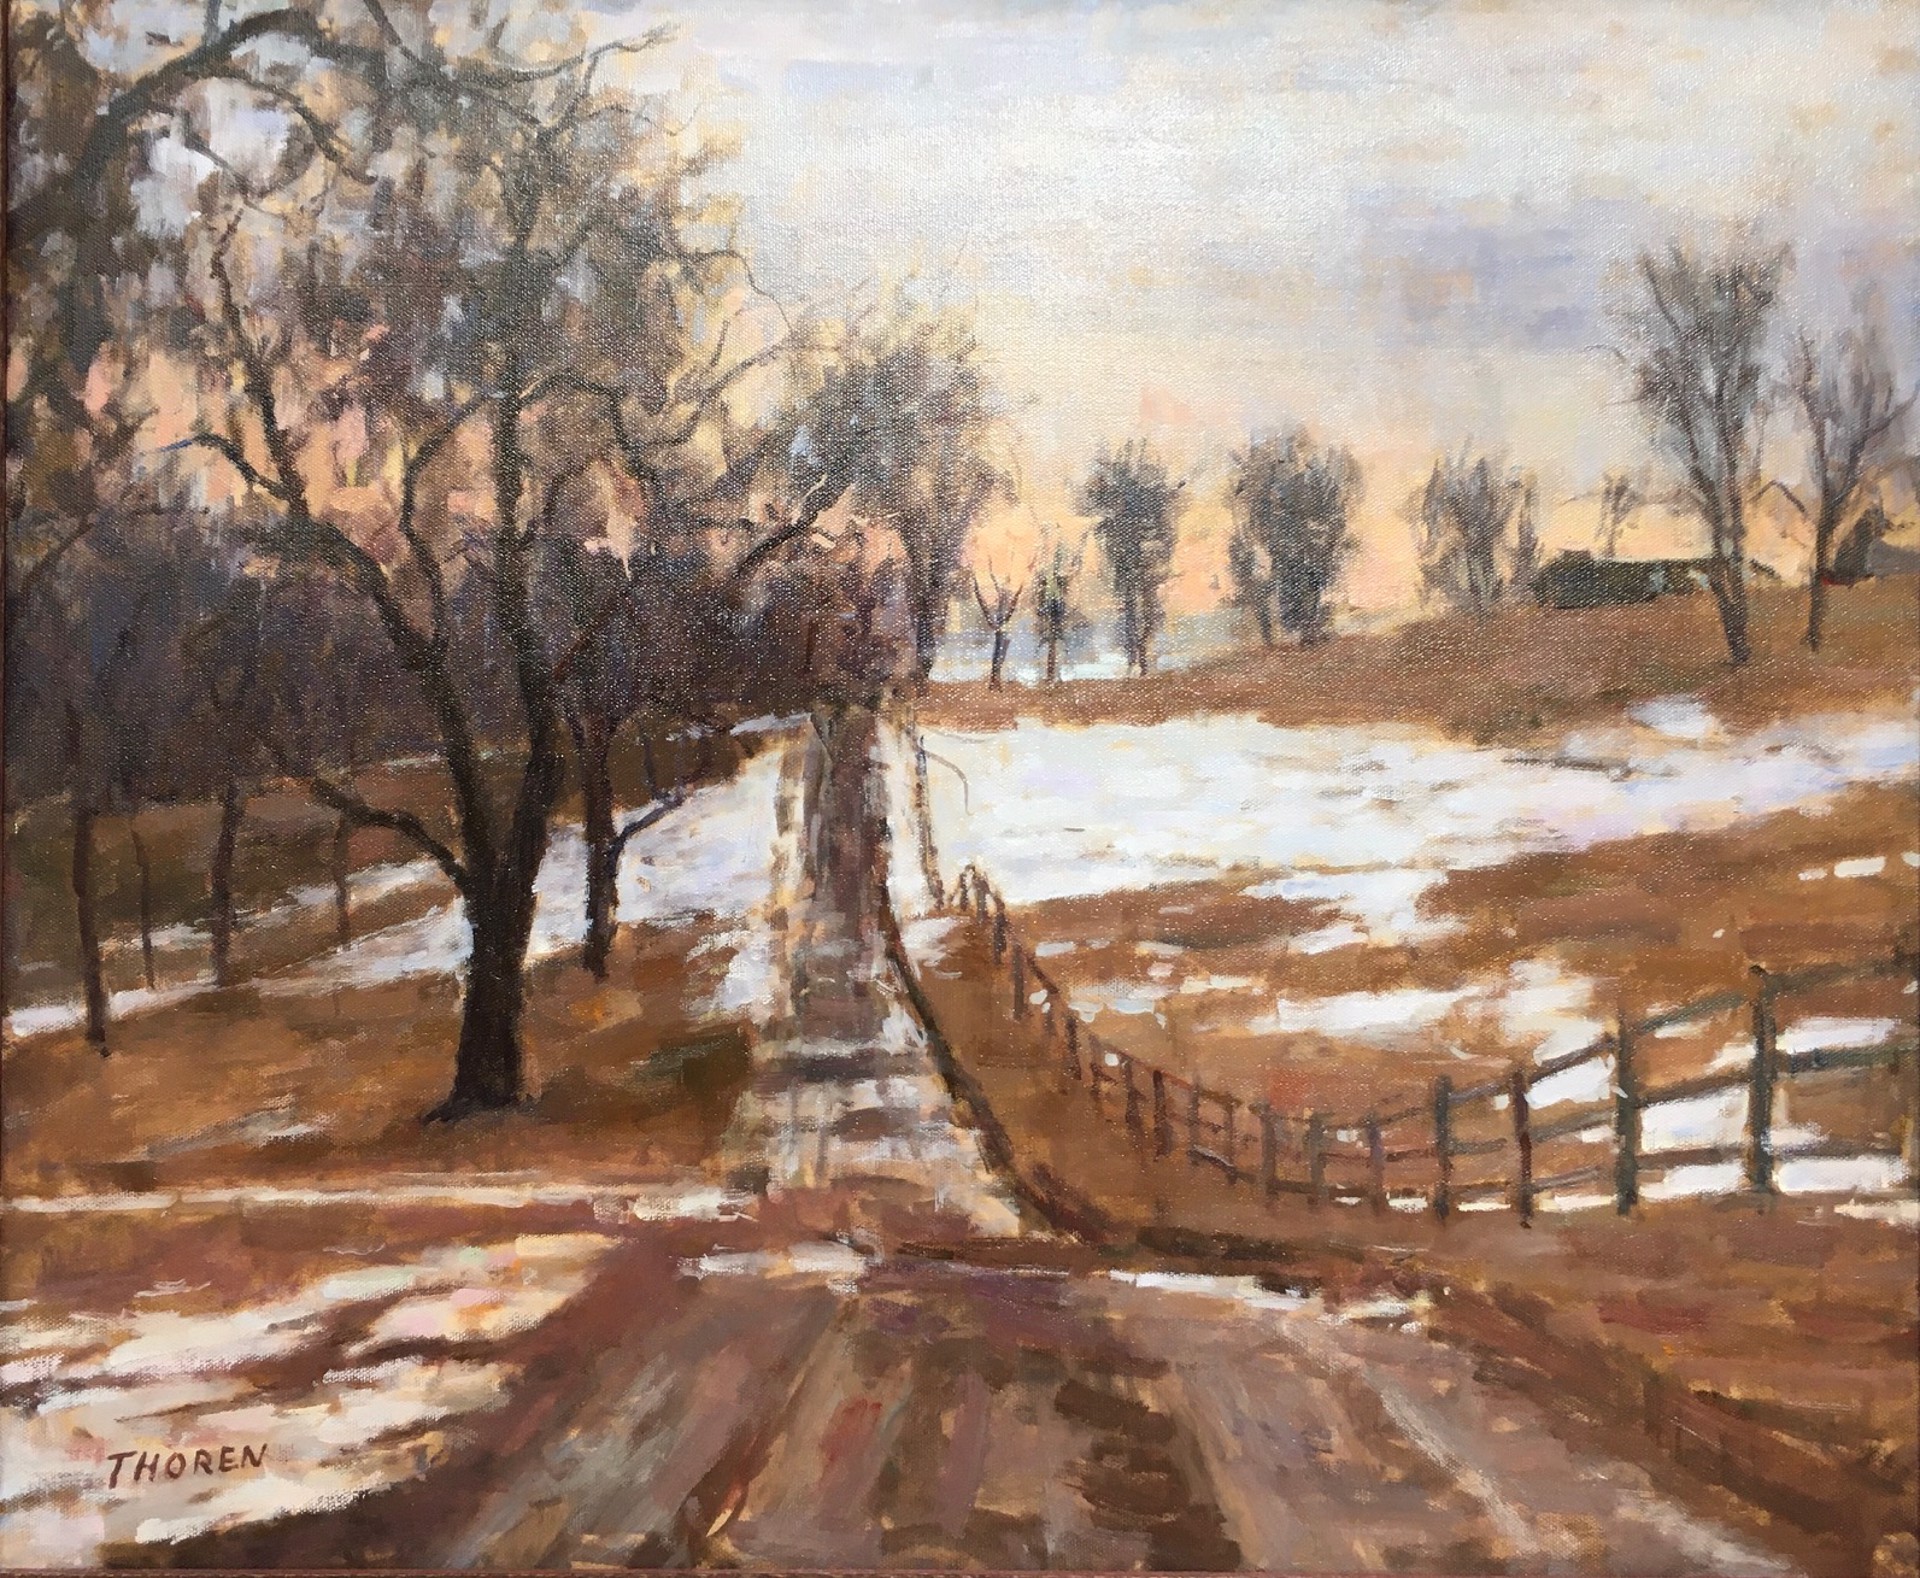 Country Lane by Bob Thoren